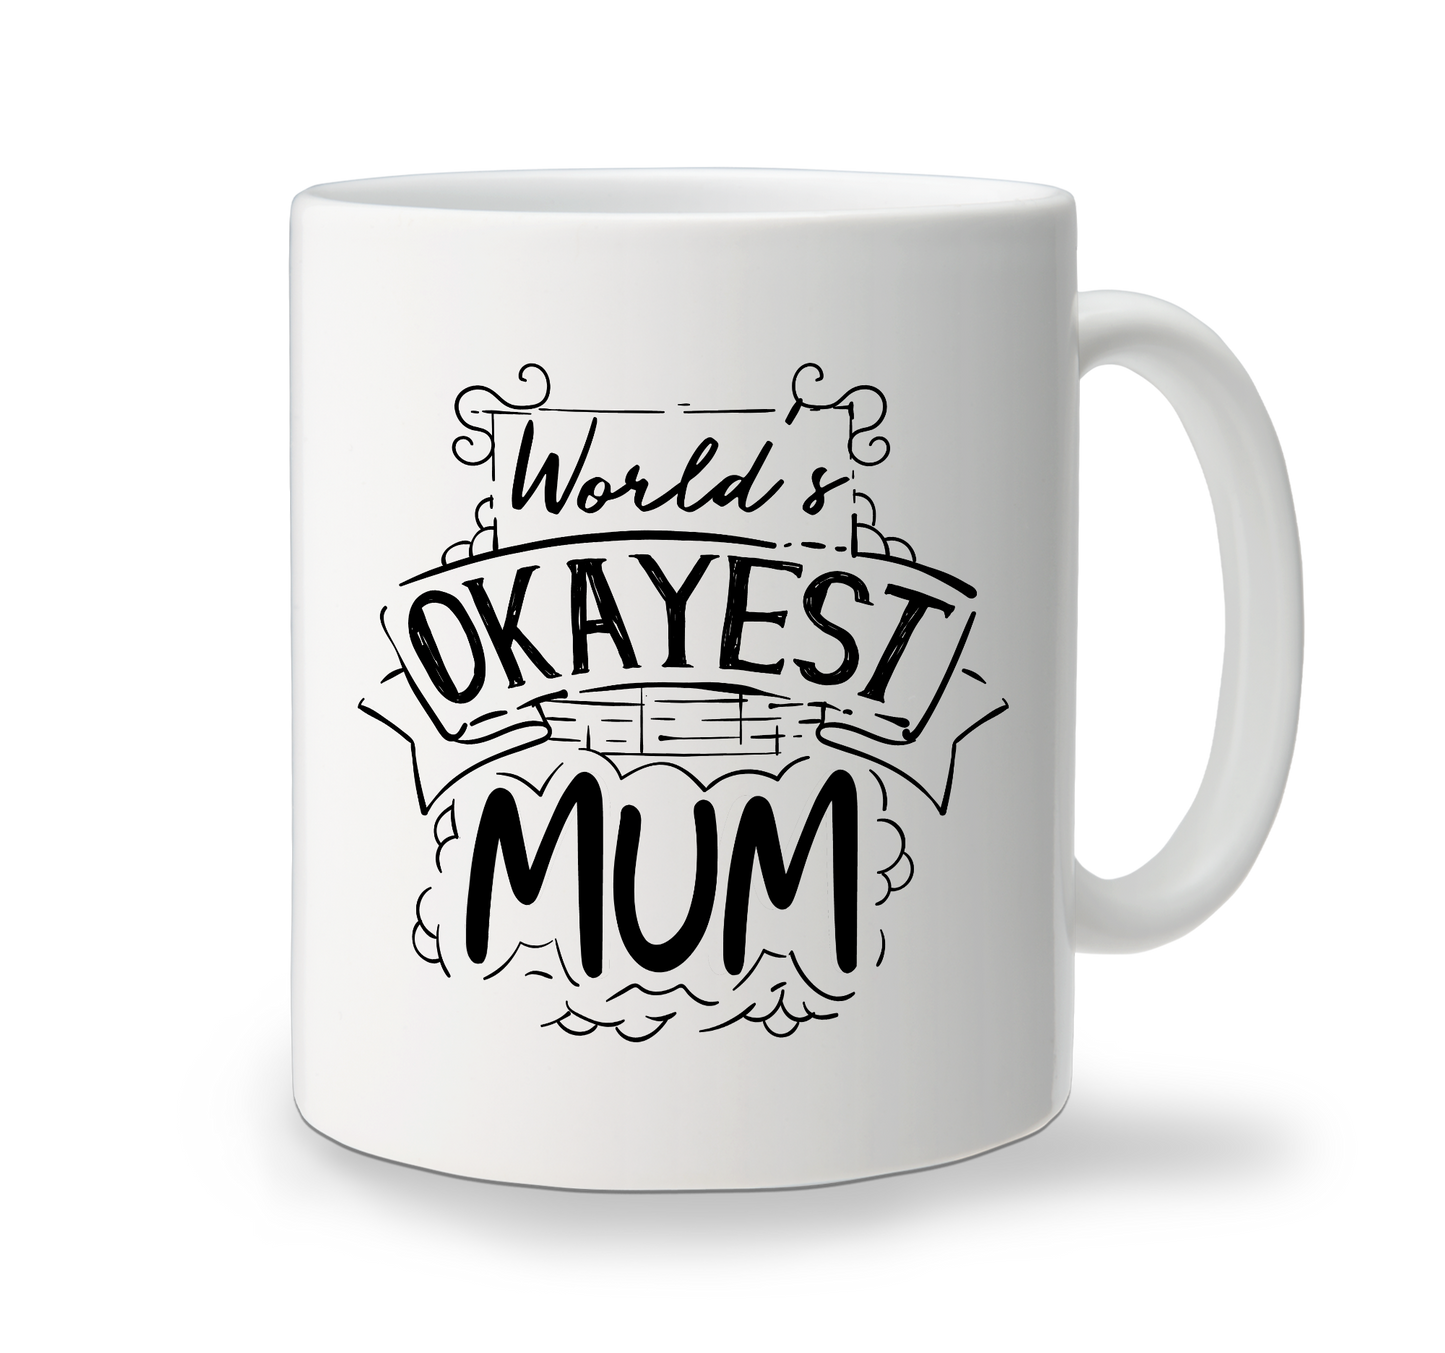 Ceramic Mug - Okayest Mum